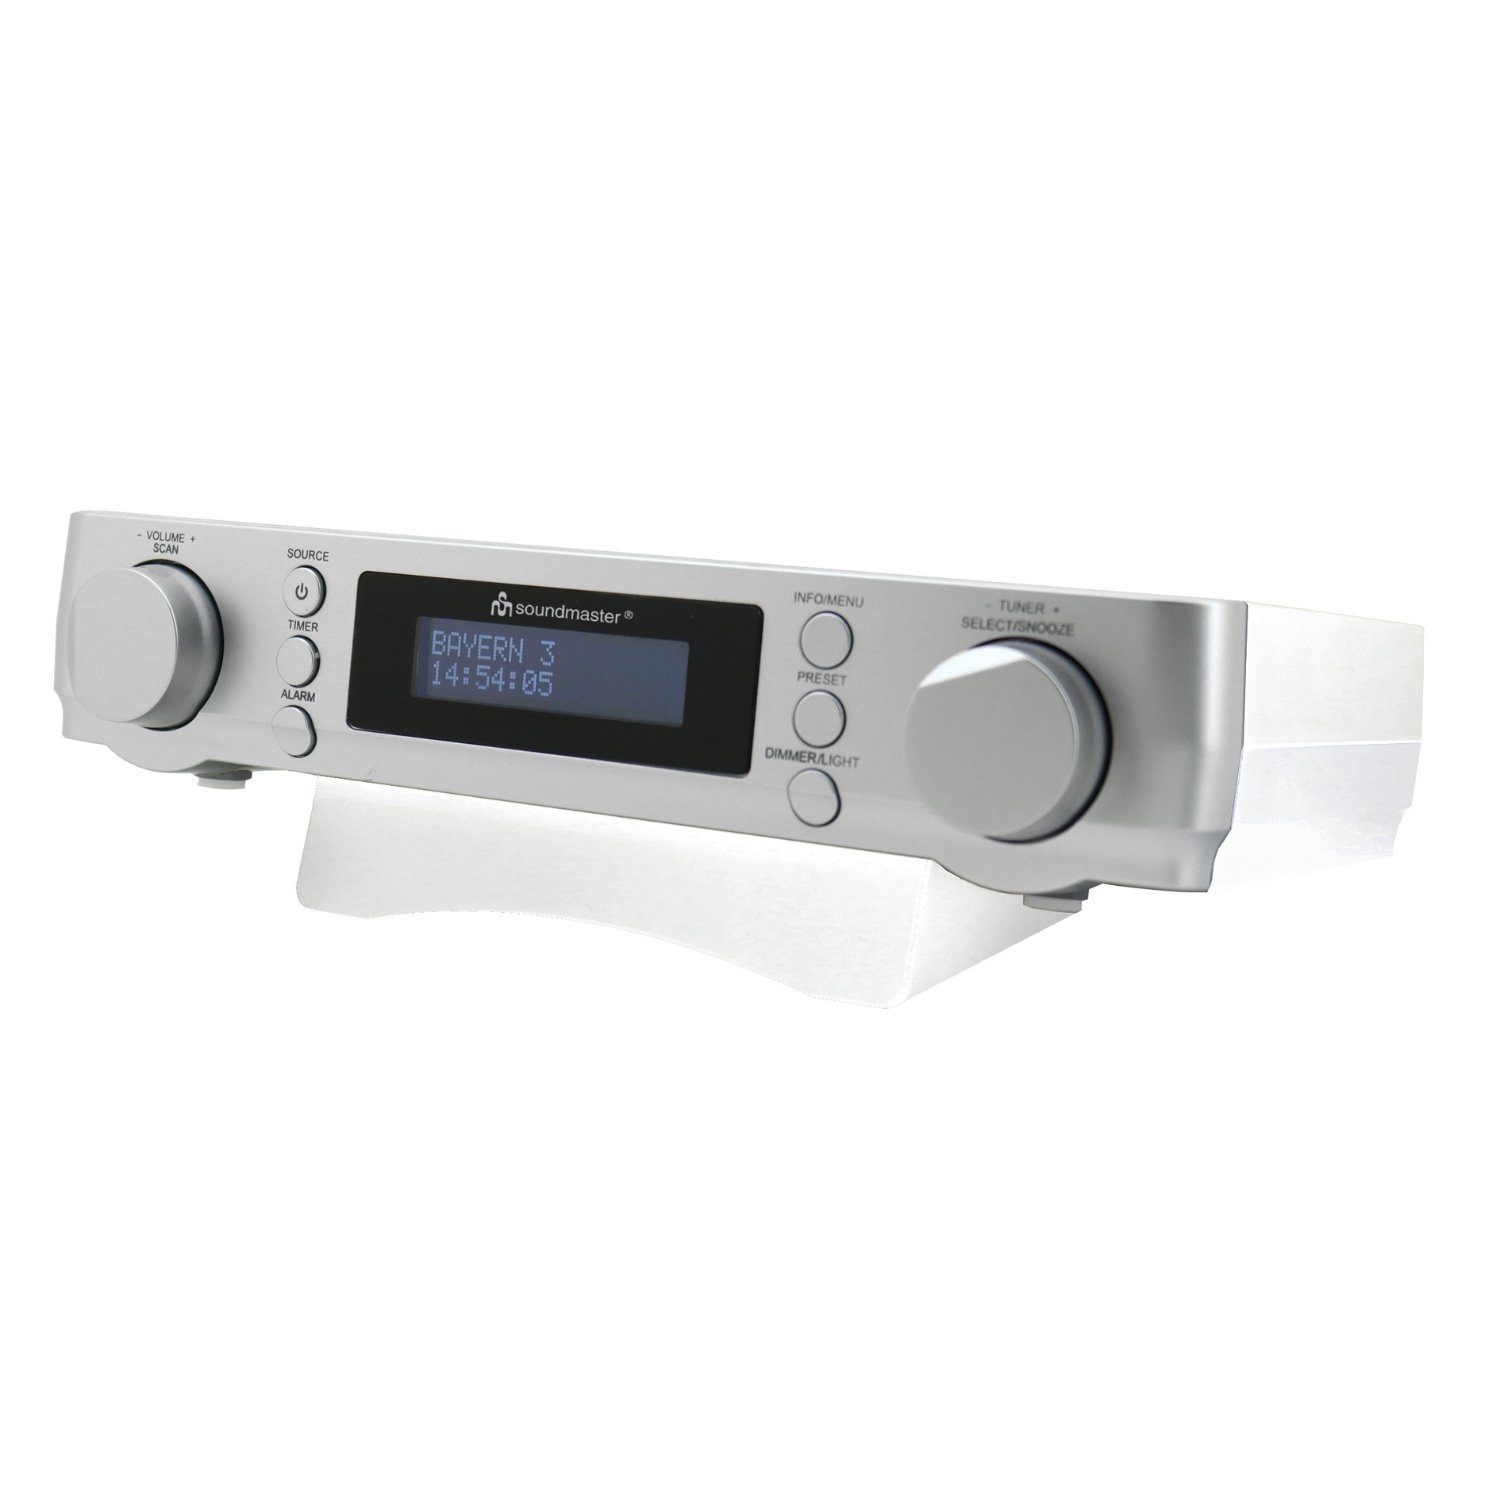 Soundmaster UR2022SI Küchenradio Unterbauradio DAB+ UKW-RDS Timer Wecker LED Küchen-Radio (DAB+, UKW/FM, RDS-Radio, 2 W, Unterbauradio, DAB+, LED Beleuchtung, Wecker, Timer)